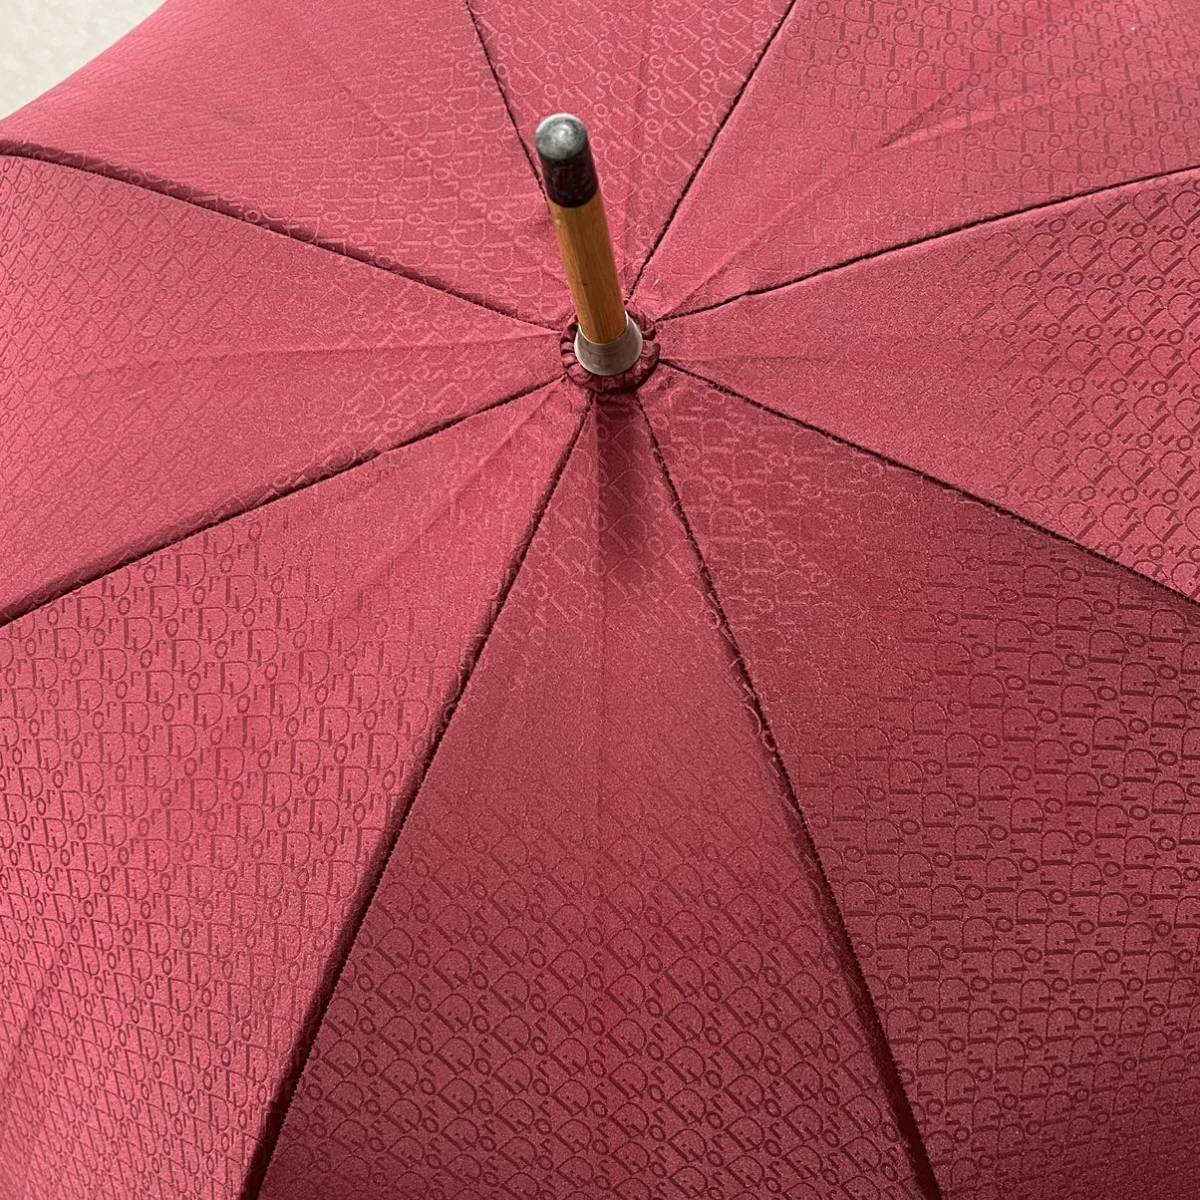  редкий Christian Dior Christian Dior Toro ta- рисунок umbrella . дождь двоякое применение зонт длинный зонт джентльмен женщина wine red Vintage 